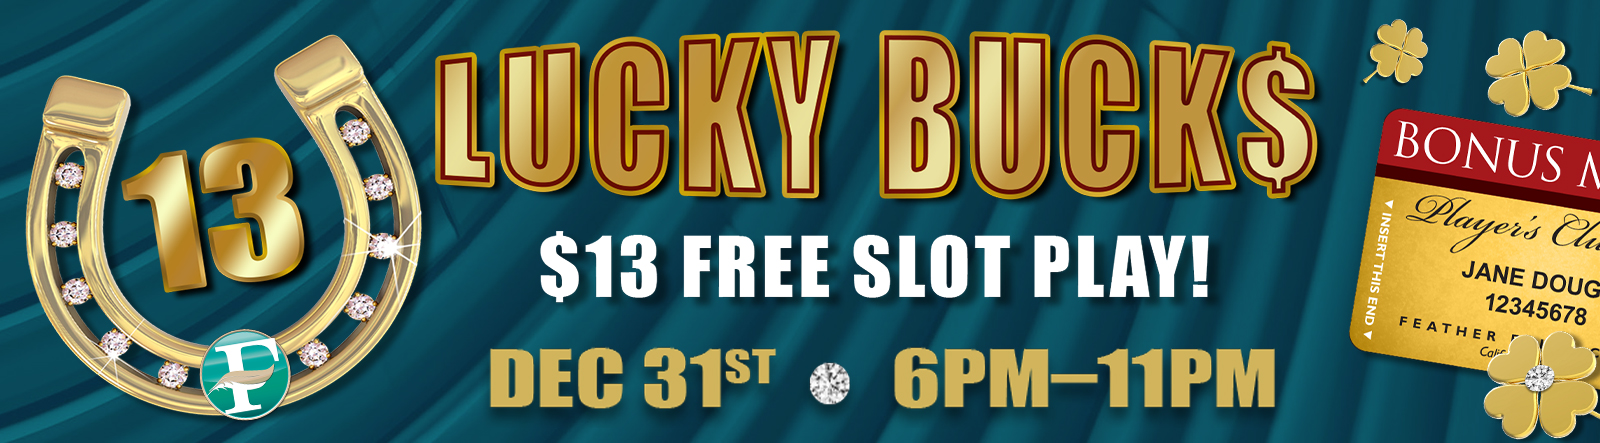 Lucky Bucks December 31st